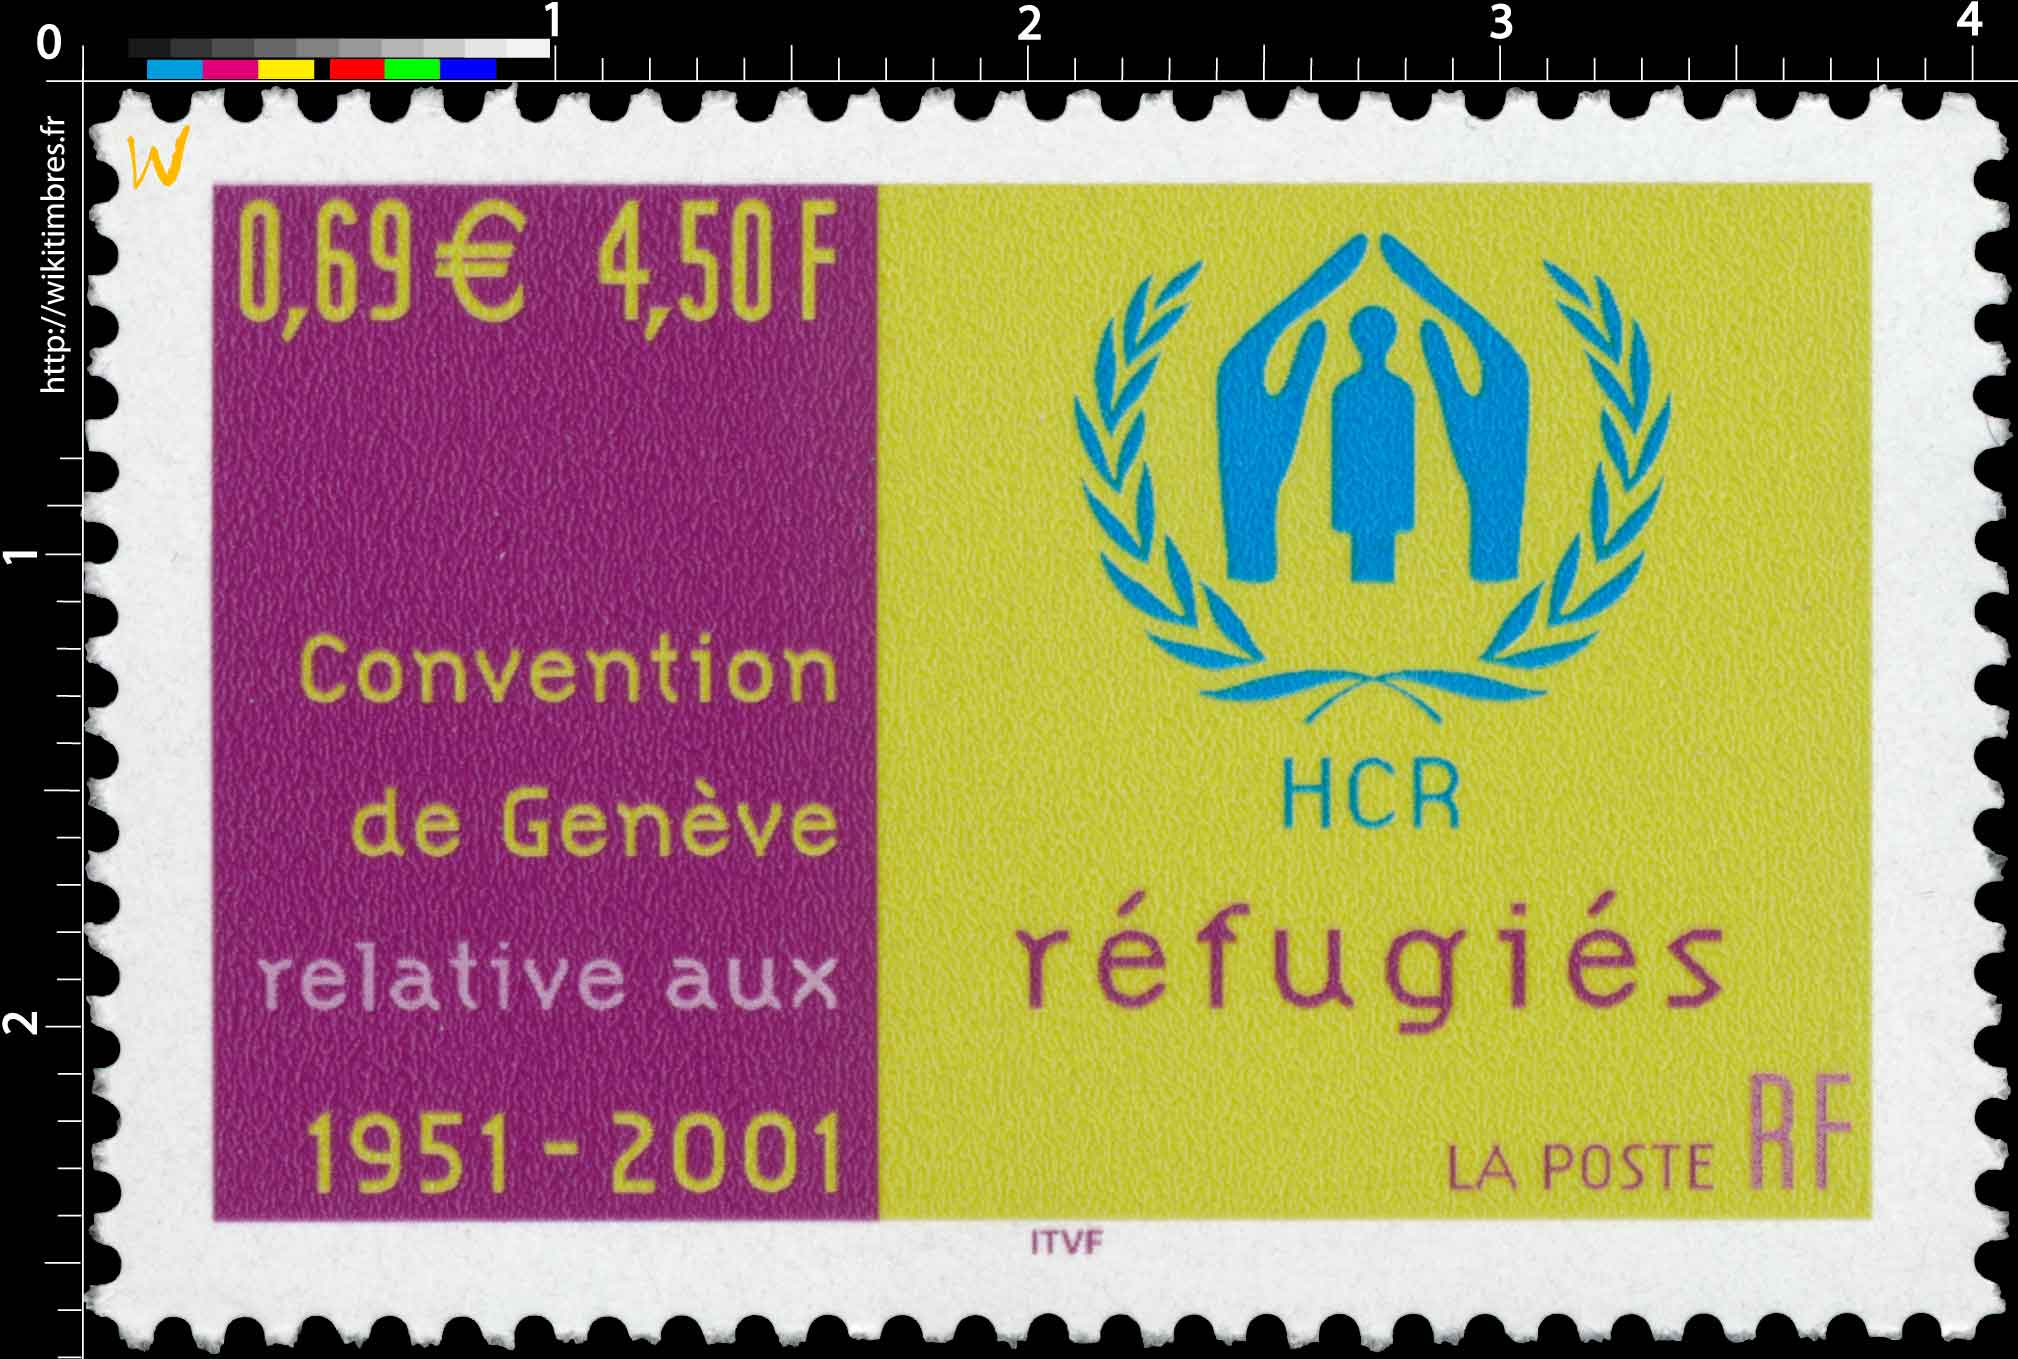 Convention de Genève relative aux réfugiés HCR 1951-2001